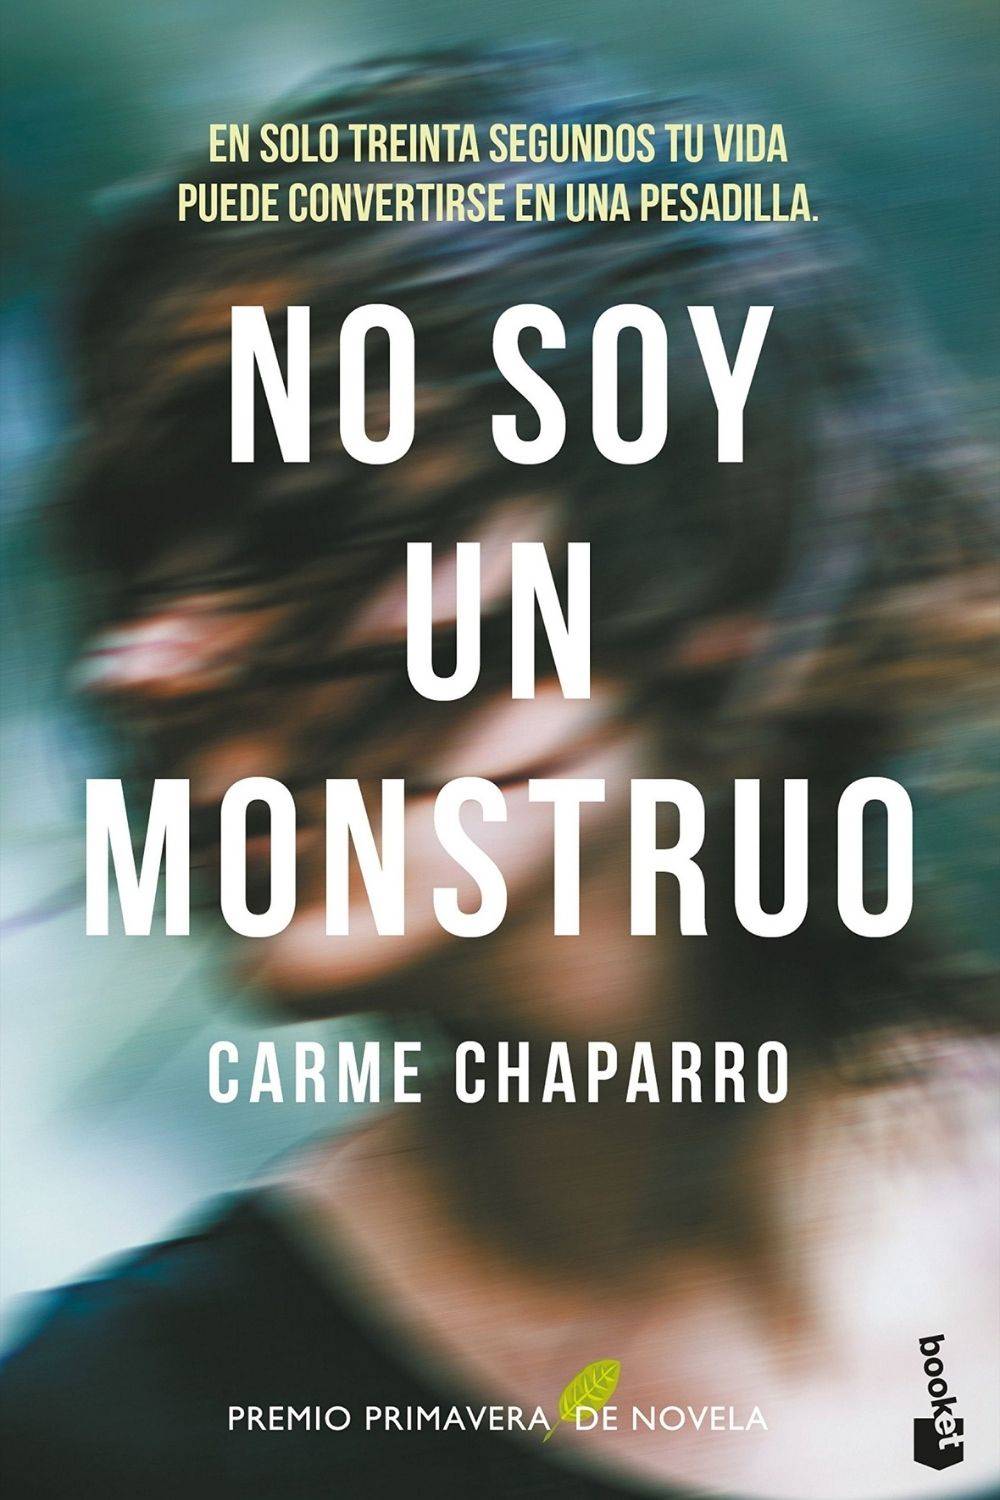 ‘No soy un monstruo’ de Carme Chaparro